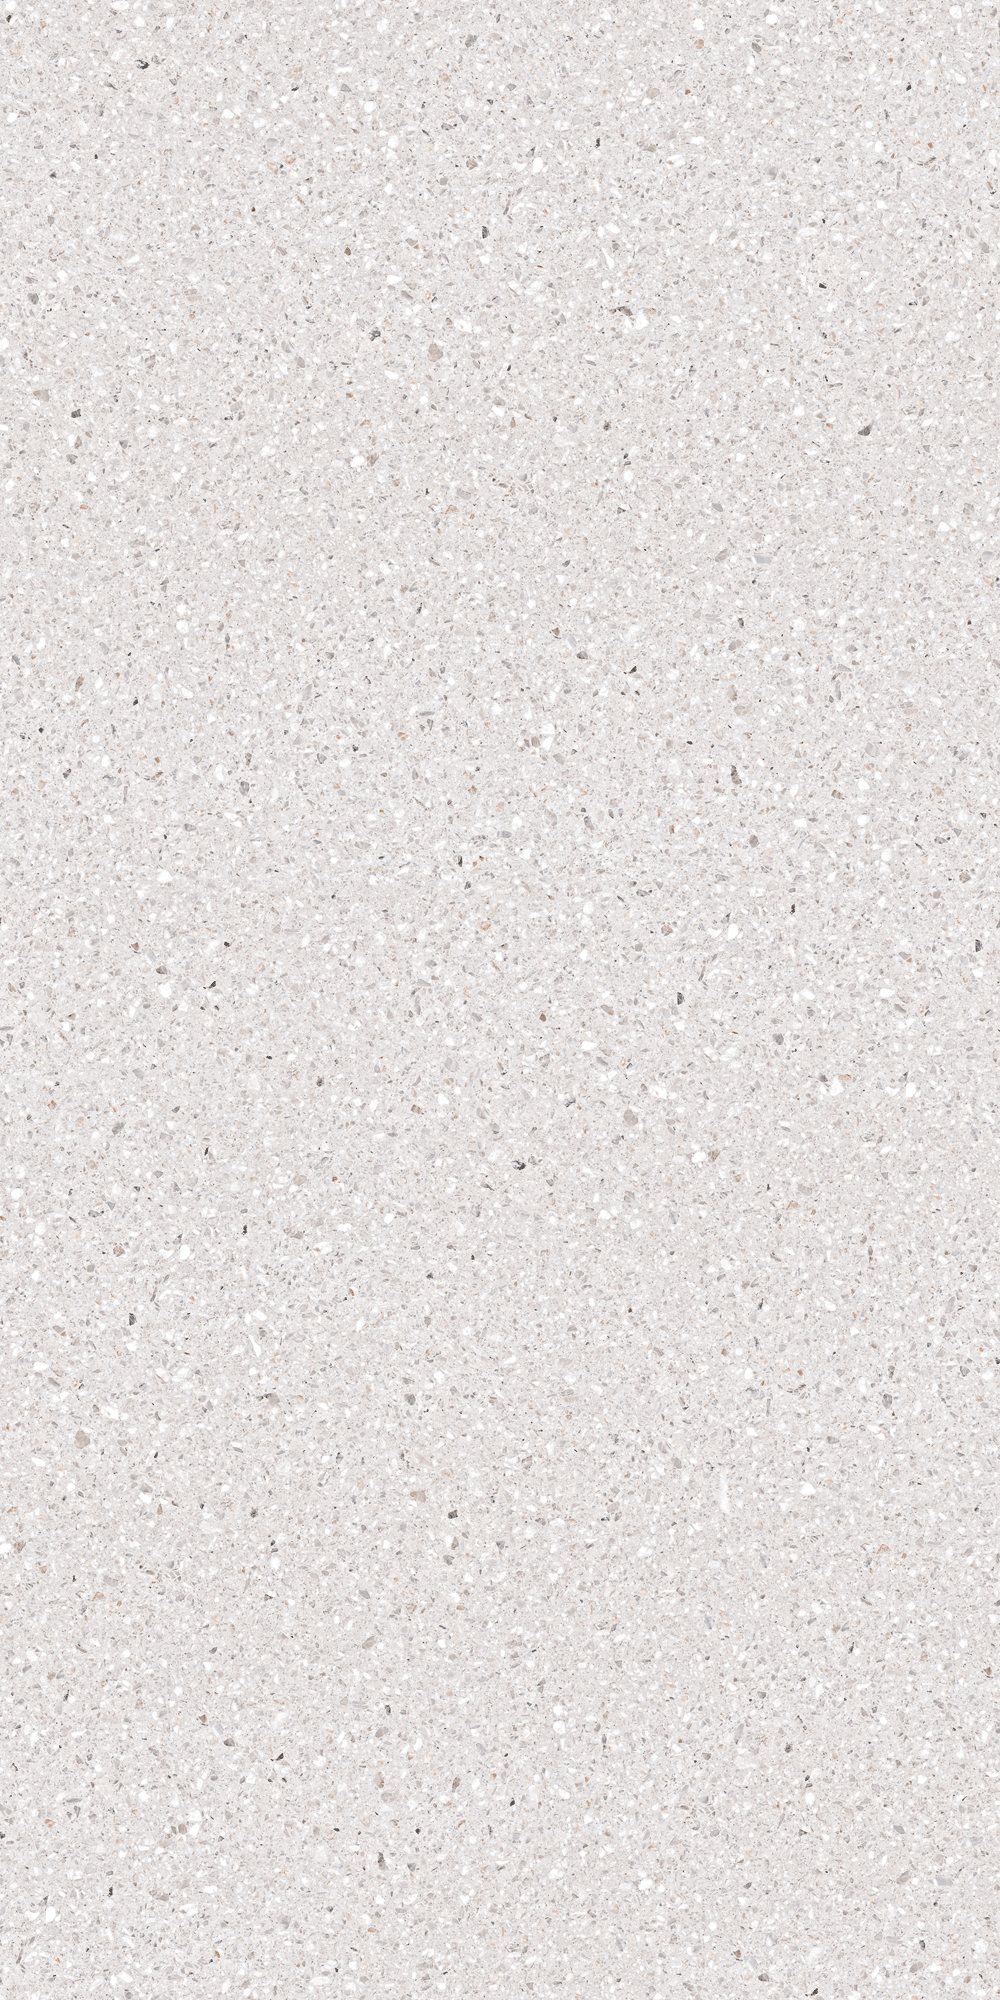 ألواح خزفية من الحجر الأبيض Terrazzo متكلس 320x160
